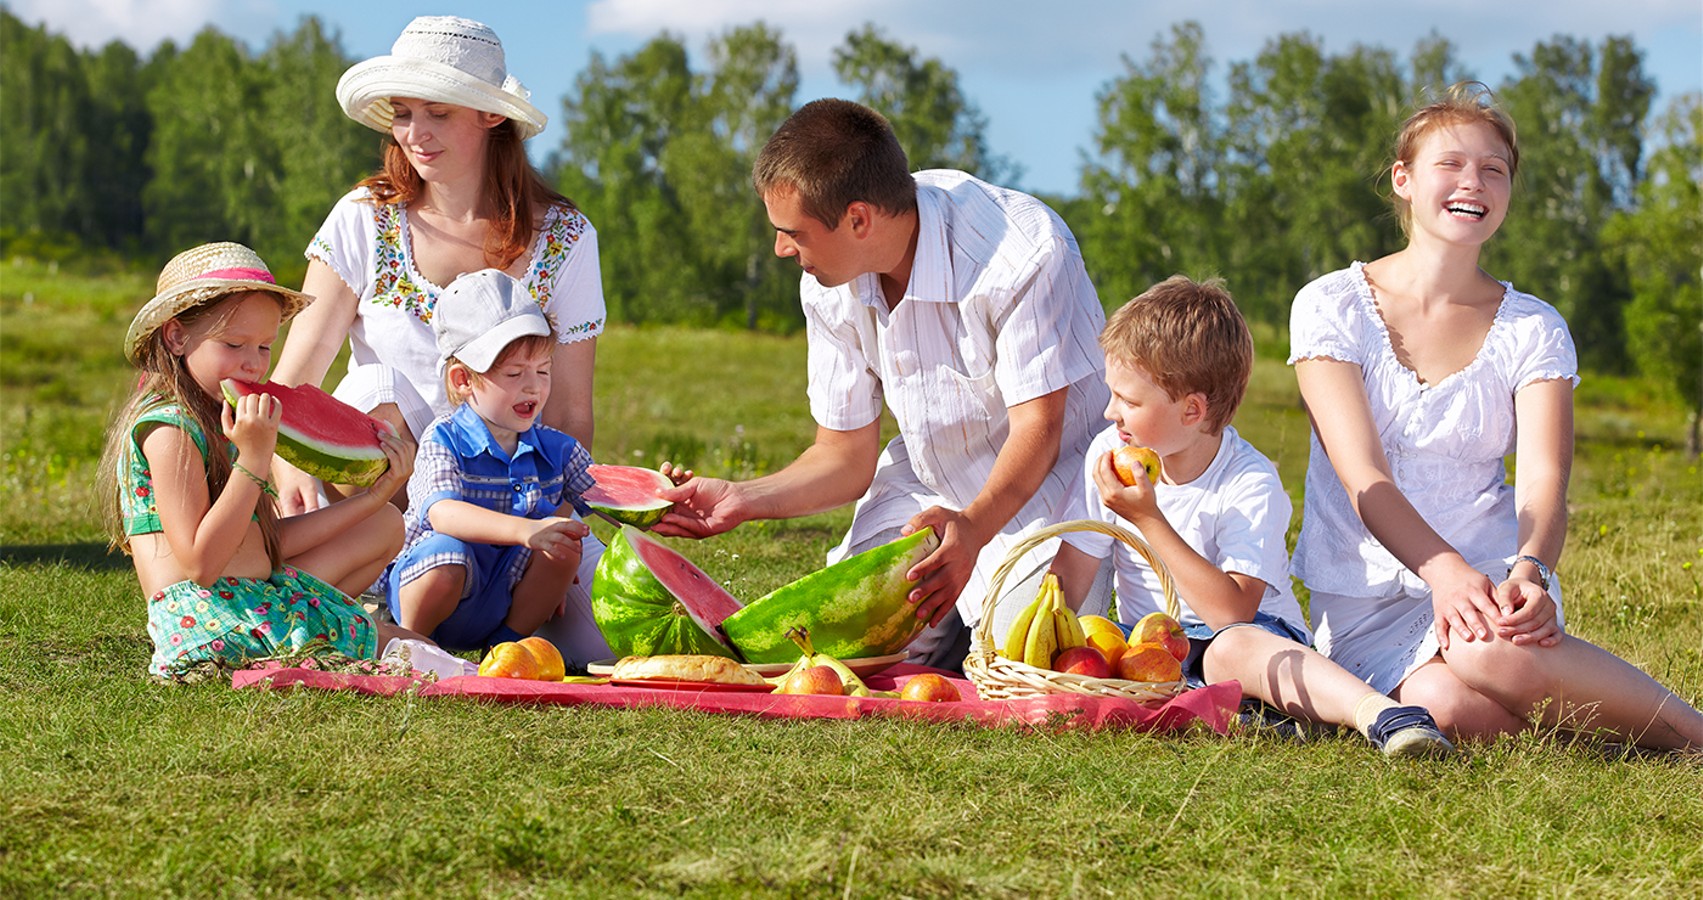 Пикник маленький. Семья на пикнике. Семейный пикник. Семья пикник в парке. Пикник на траве с ребёнком всей семьей.